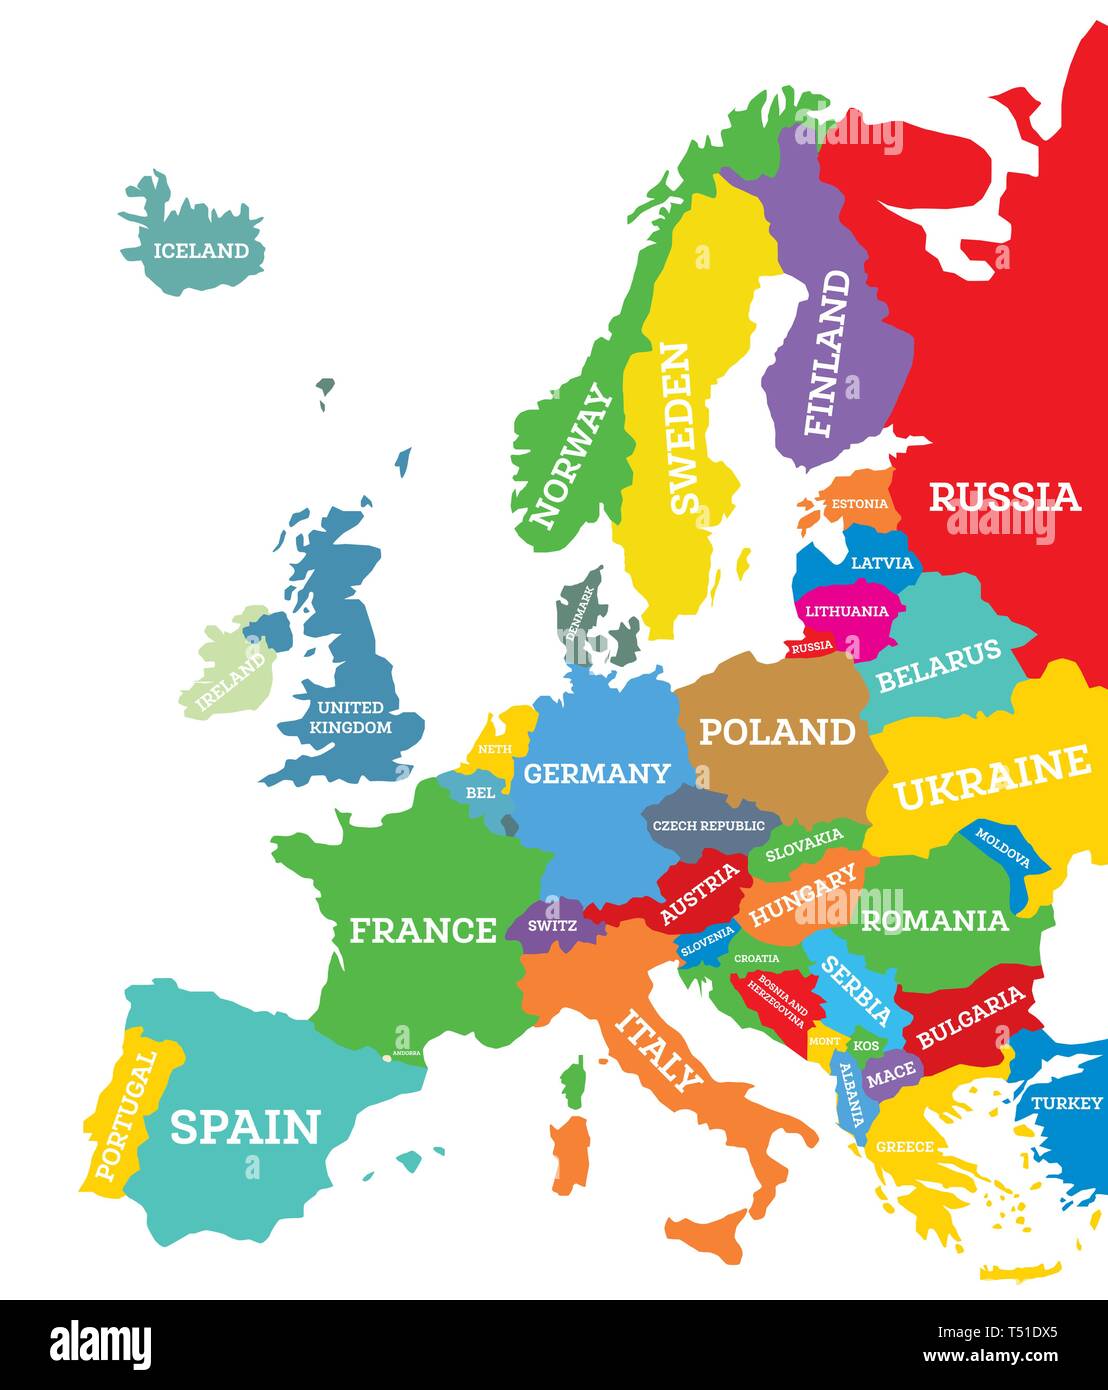 Avrupa Haritasi Europe Wallpaper Europe Map Political Map Images